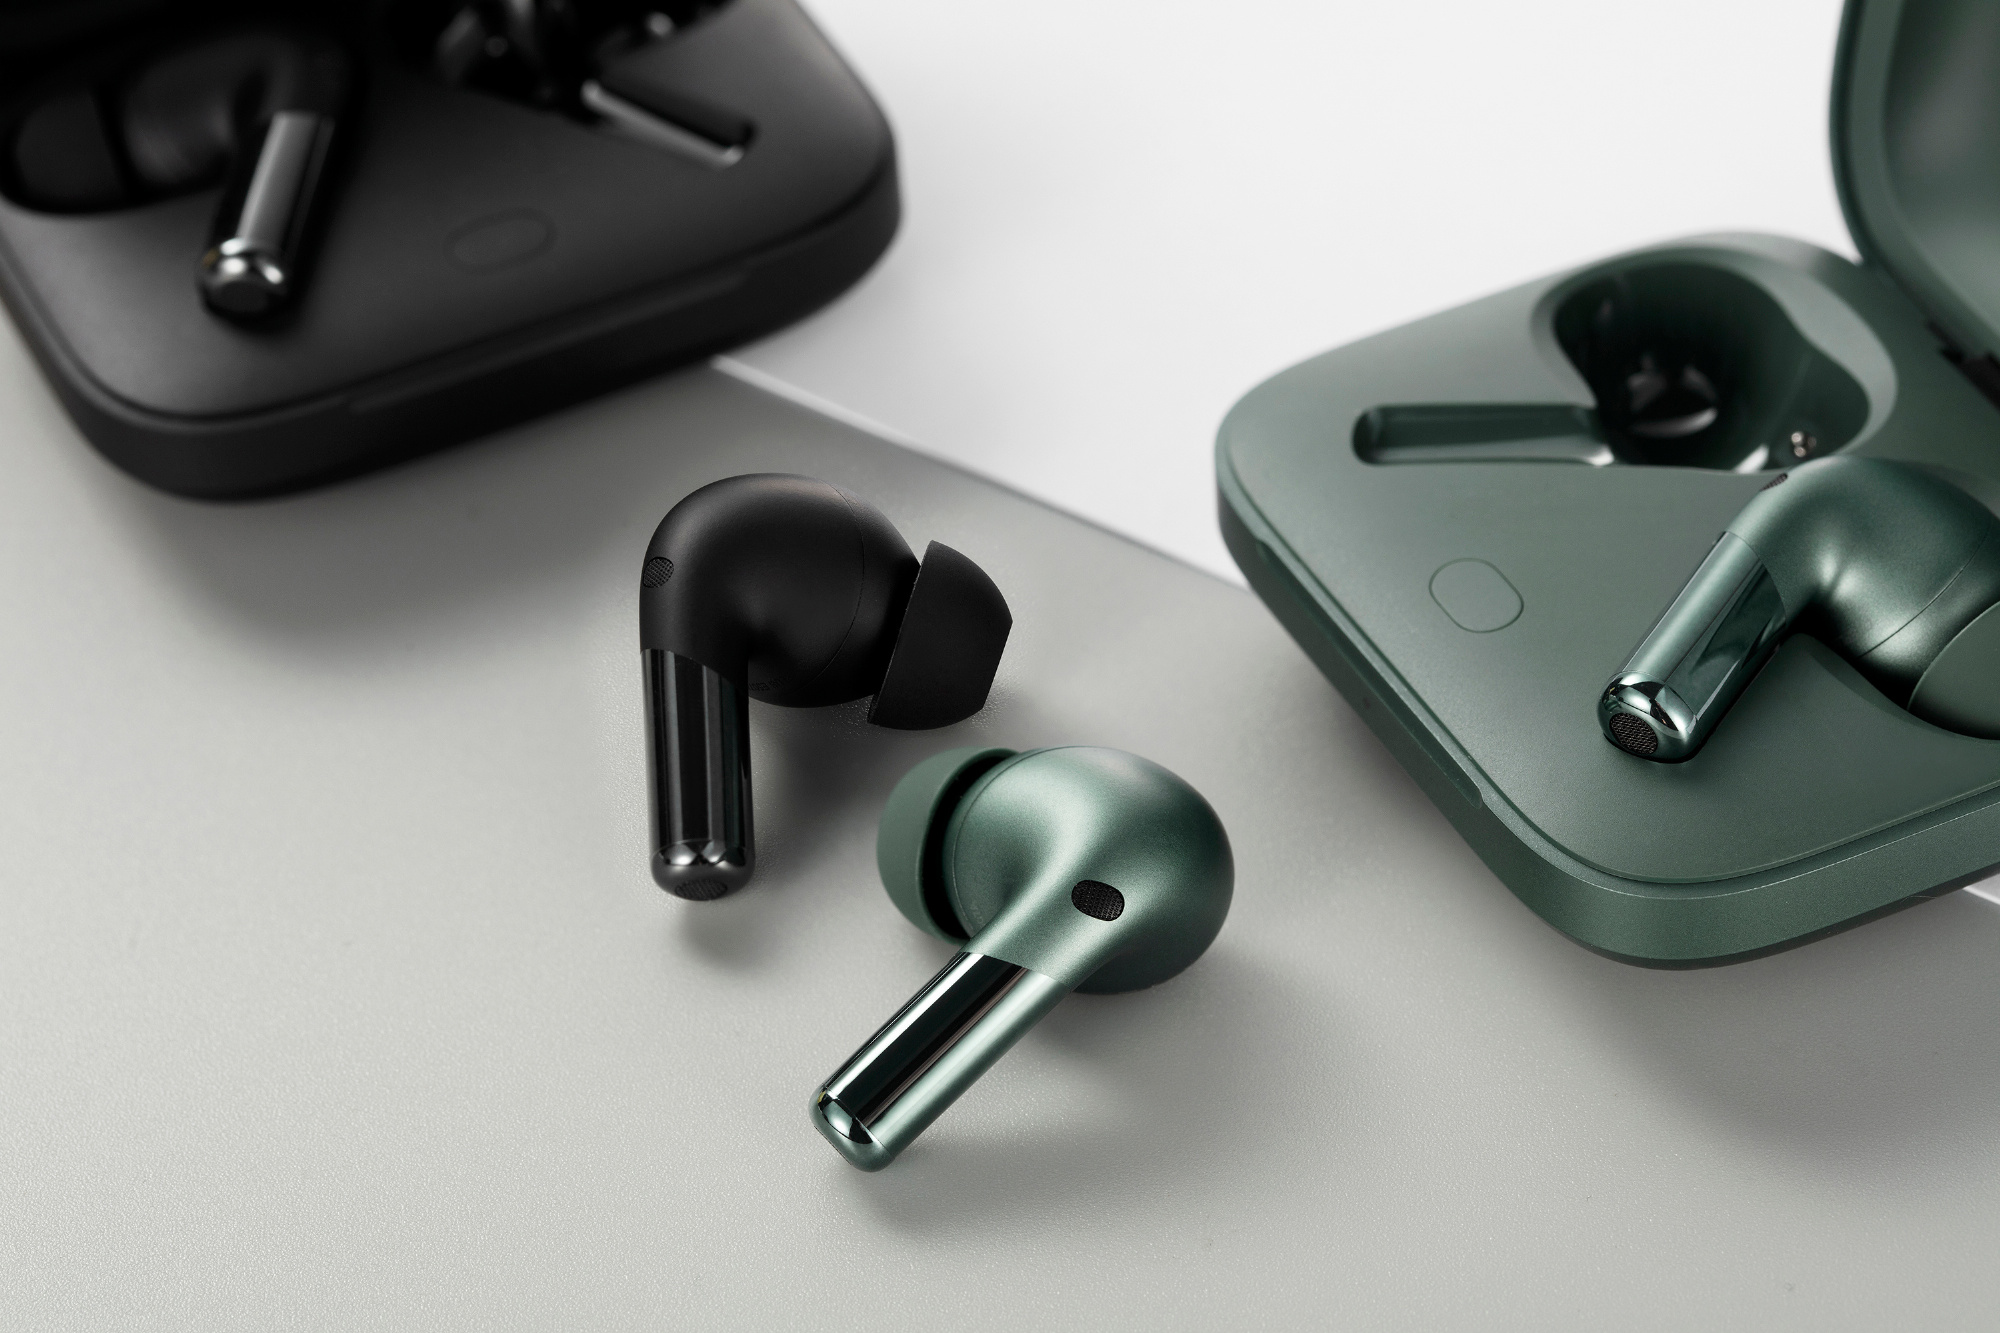 OnePlus ra mắt tai nghe không dây mới: Có chống ồn chủ động, pin 39 giờ, giá 3 triệu đồng - Ảnh 2.